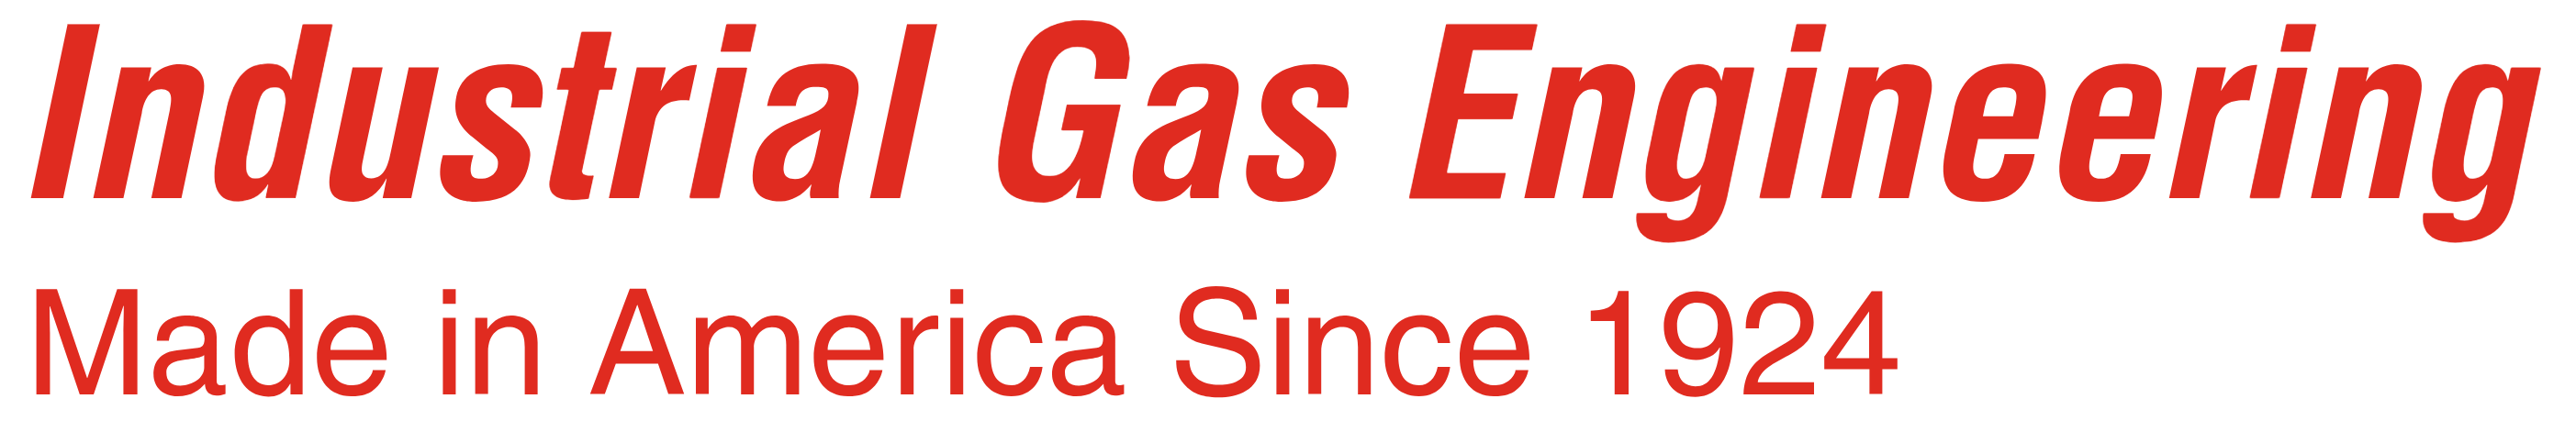 Industrial Gas Engineering